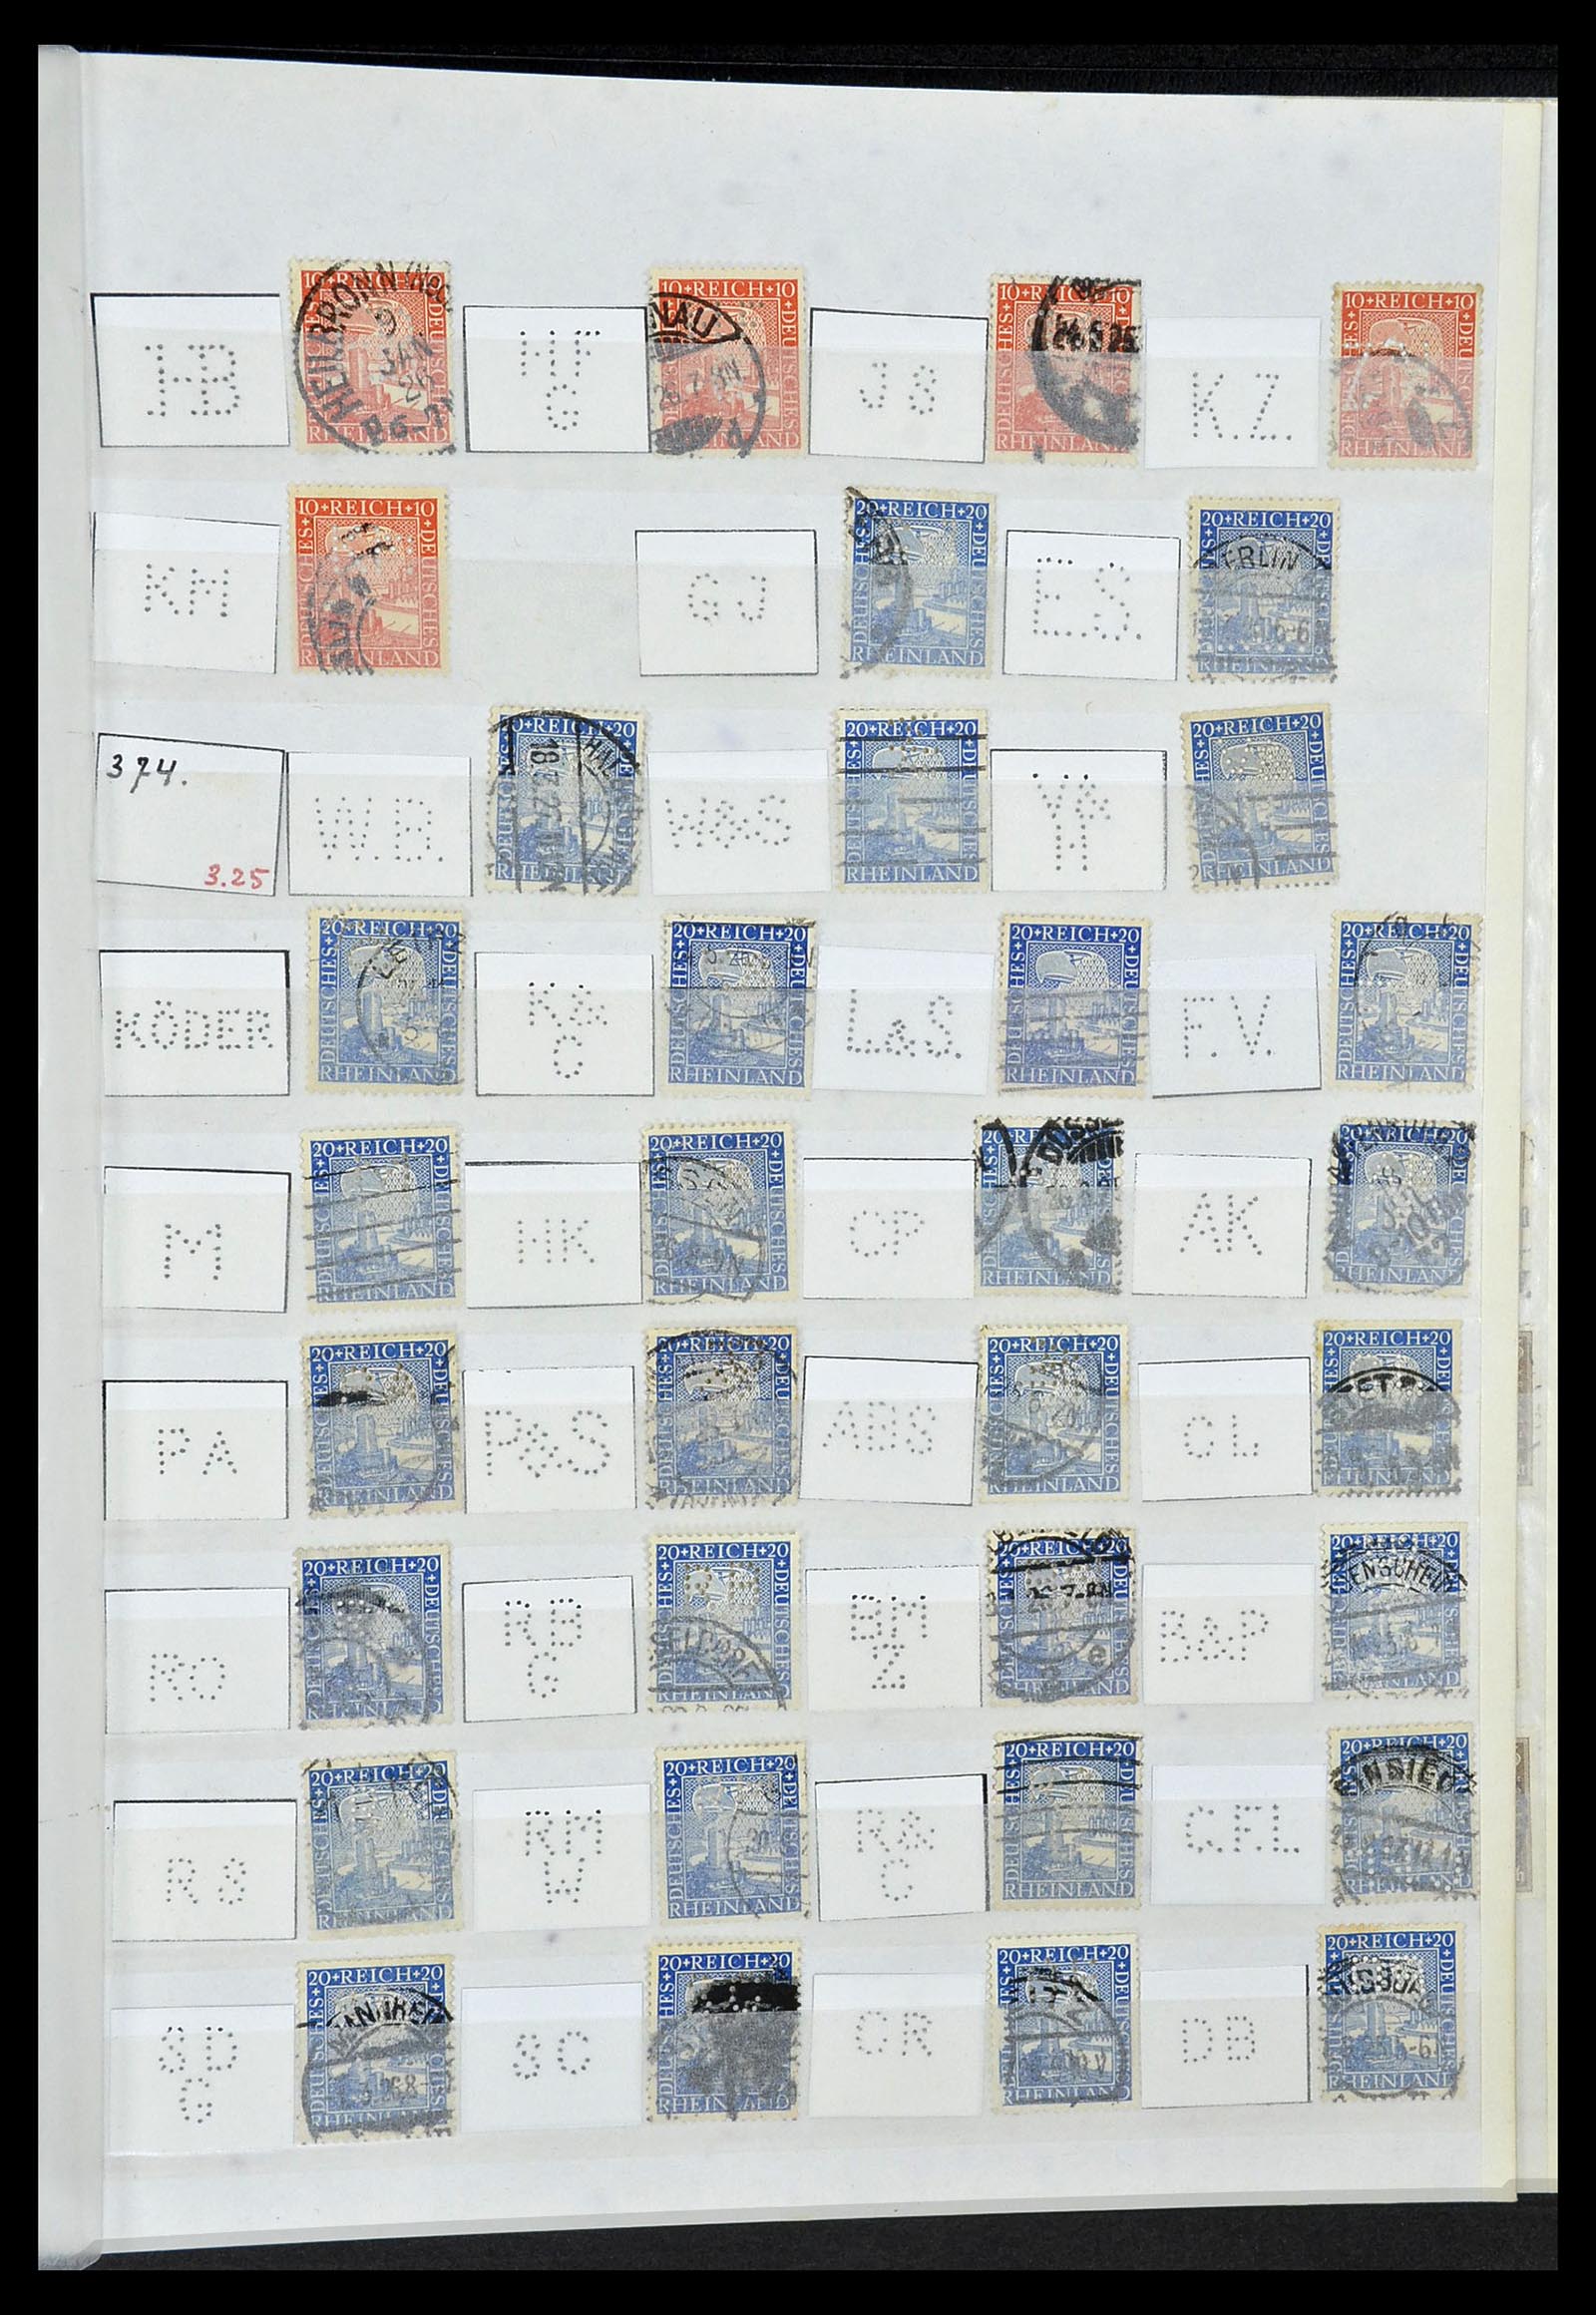 34071 051 - Stamp collection 34071 German Reich perfins 1923-1930.